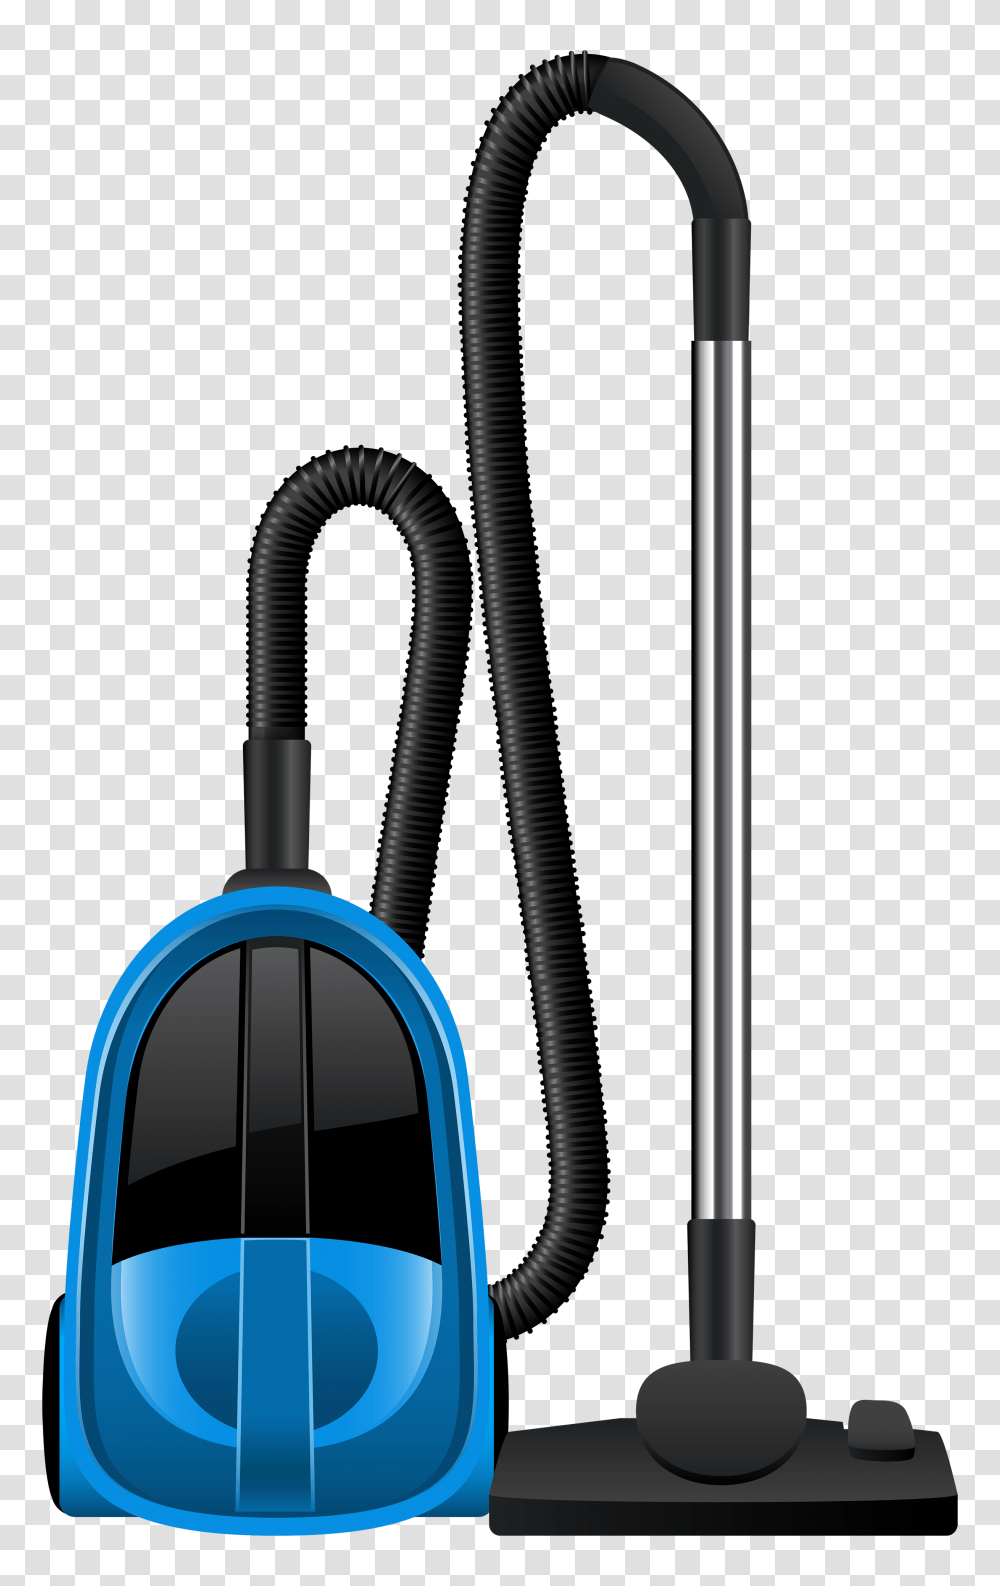 Pin De Gabriela Leahu Pe Desene Obiecte Vacuums Blue, Sink Faucet, Appliance, Vacuum Cleaner, Shower Faucet Transparent Png